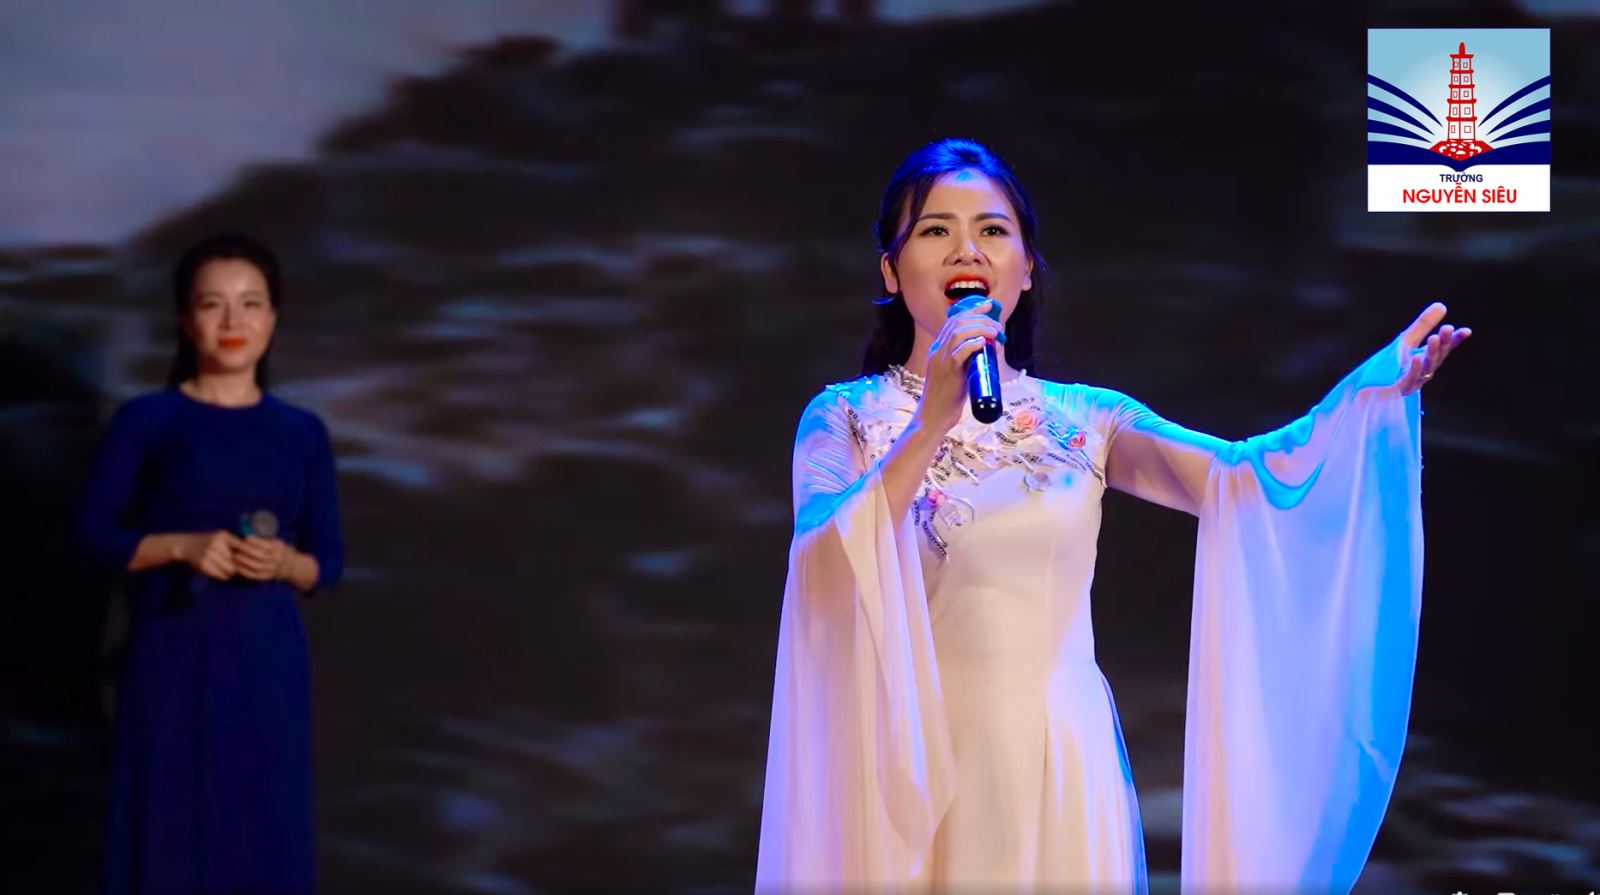 Tiết mục tham gia Liên hoan tiếng hát GV toàn quốc của GV Nguyễn Siêu